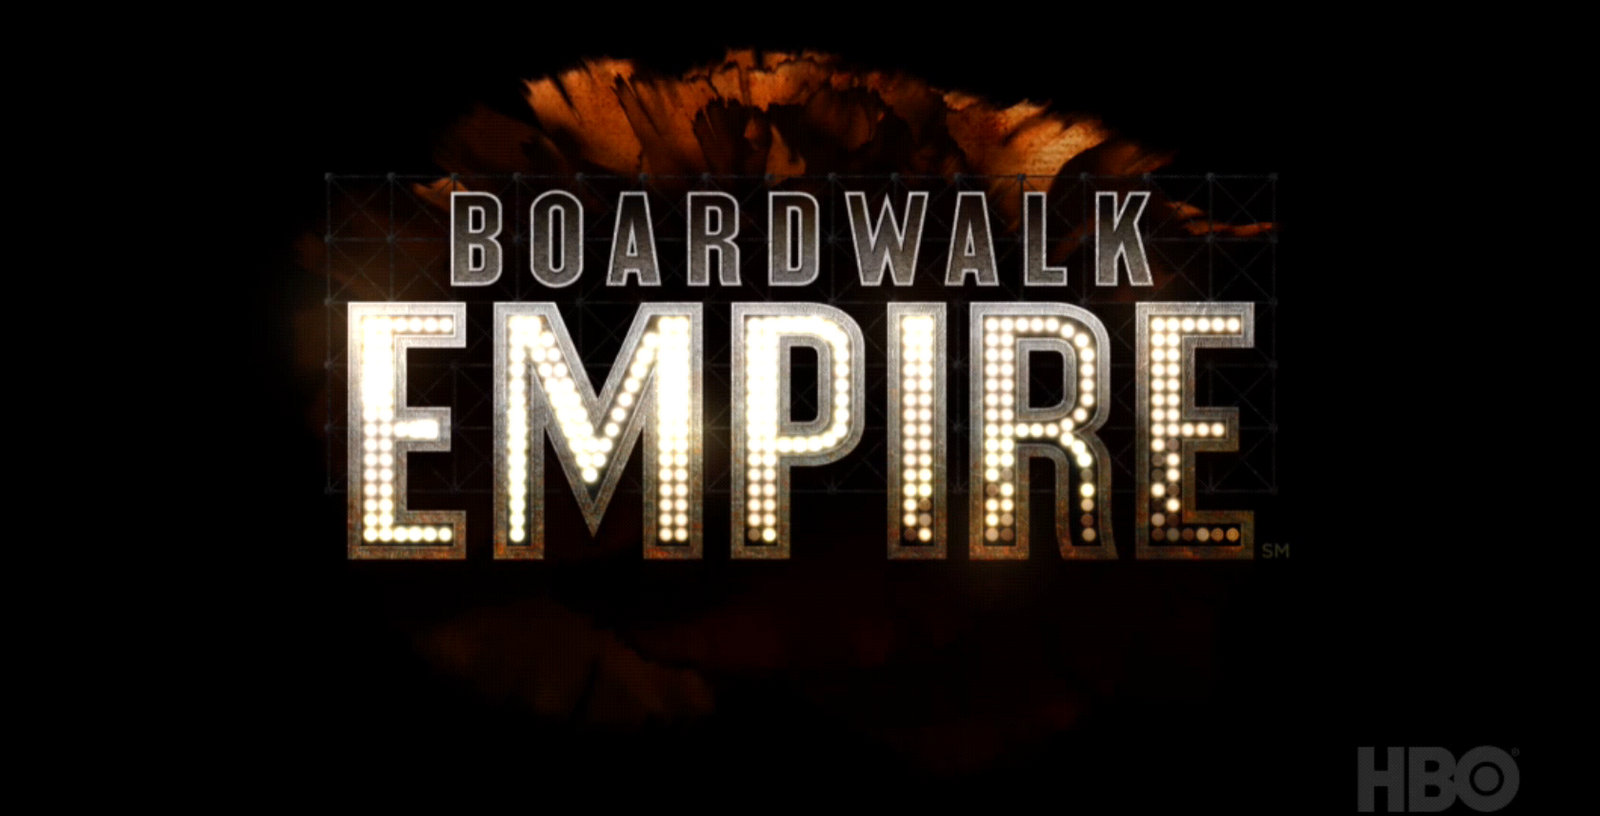 watch boardwalk empire season 2 episode 1 online free